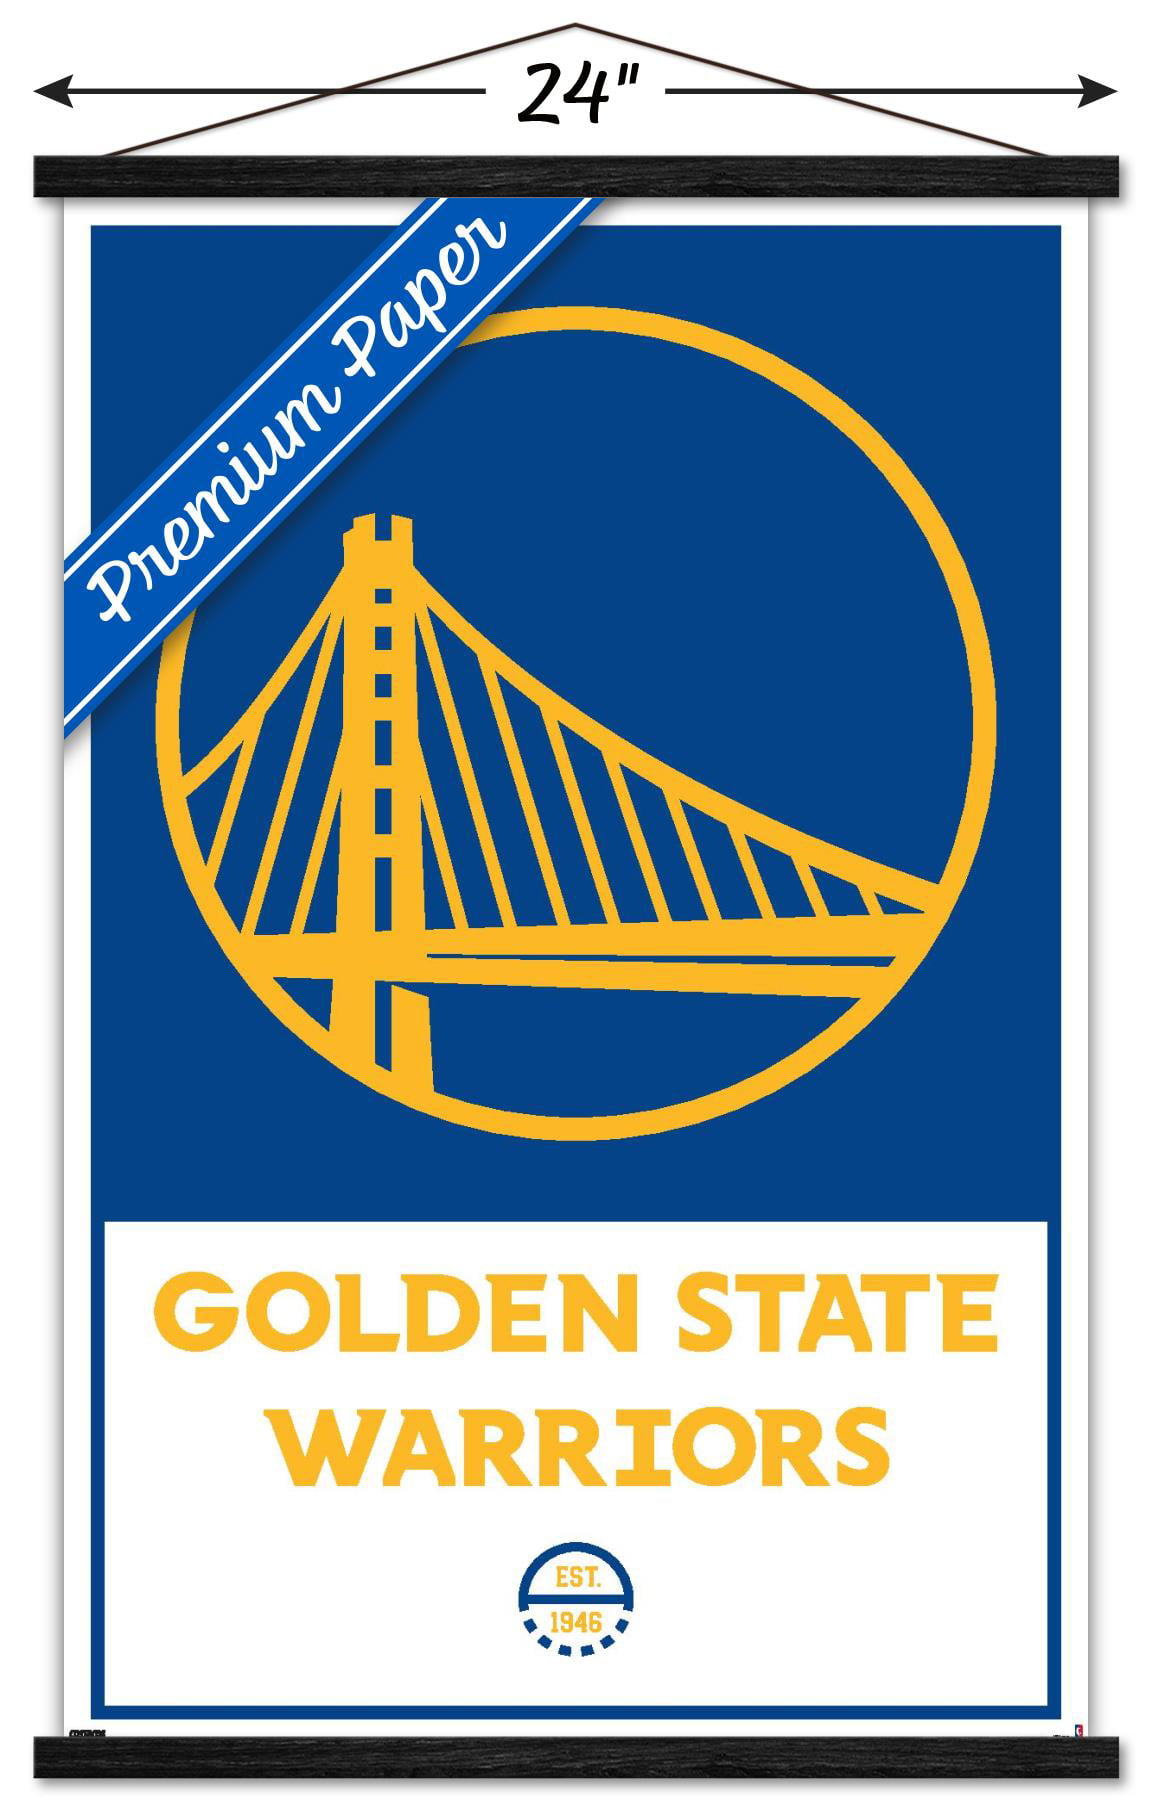 NBA Golden State Warriors - Logo 21 Wall Poster, 22.375